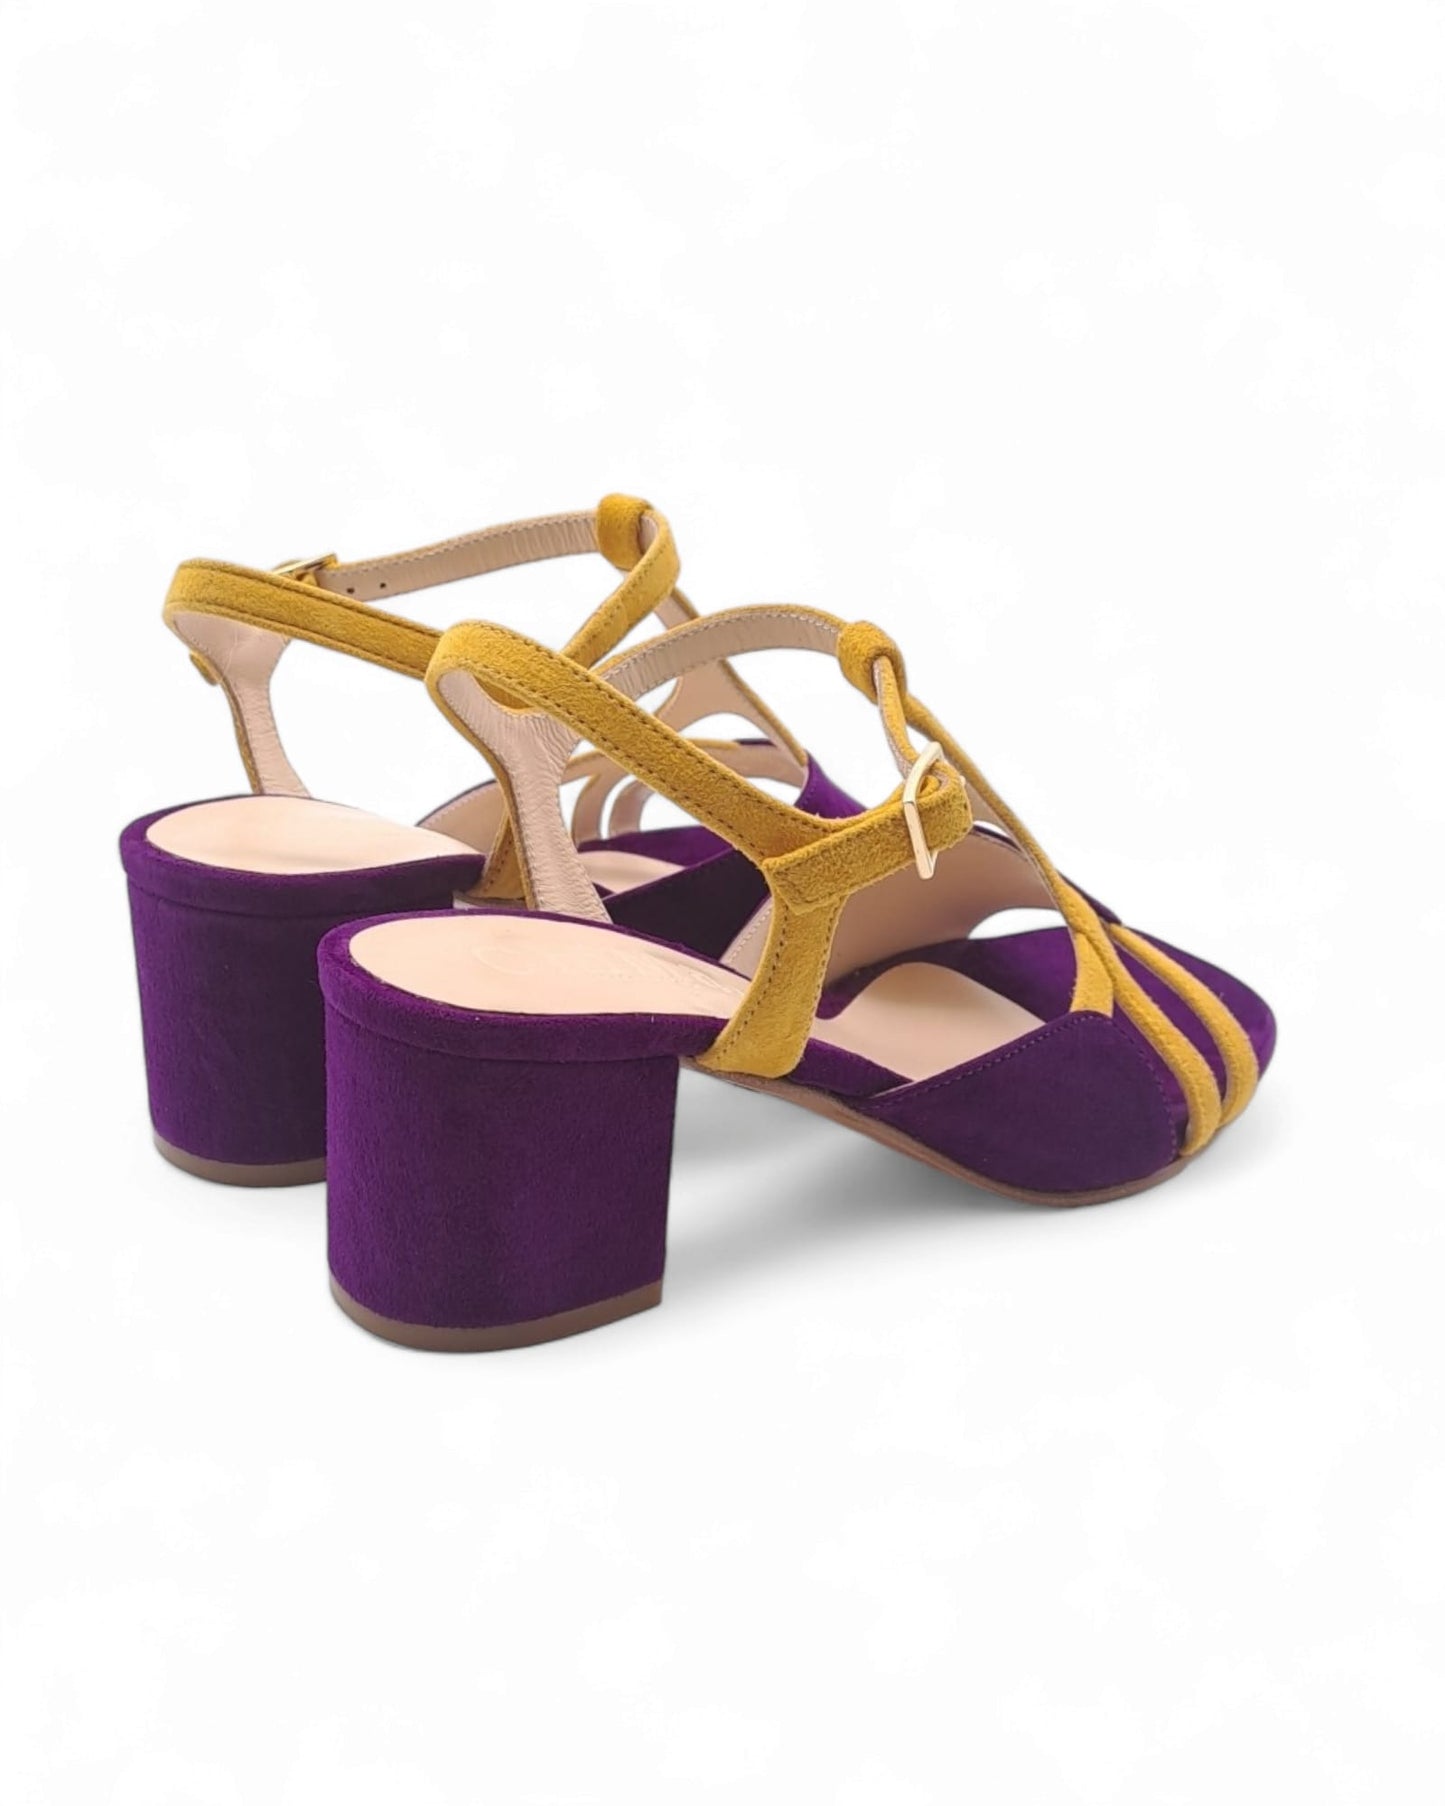 Dolores Sandal Nappa Suede Purple / Saffron